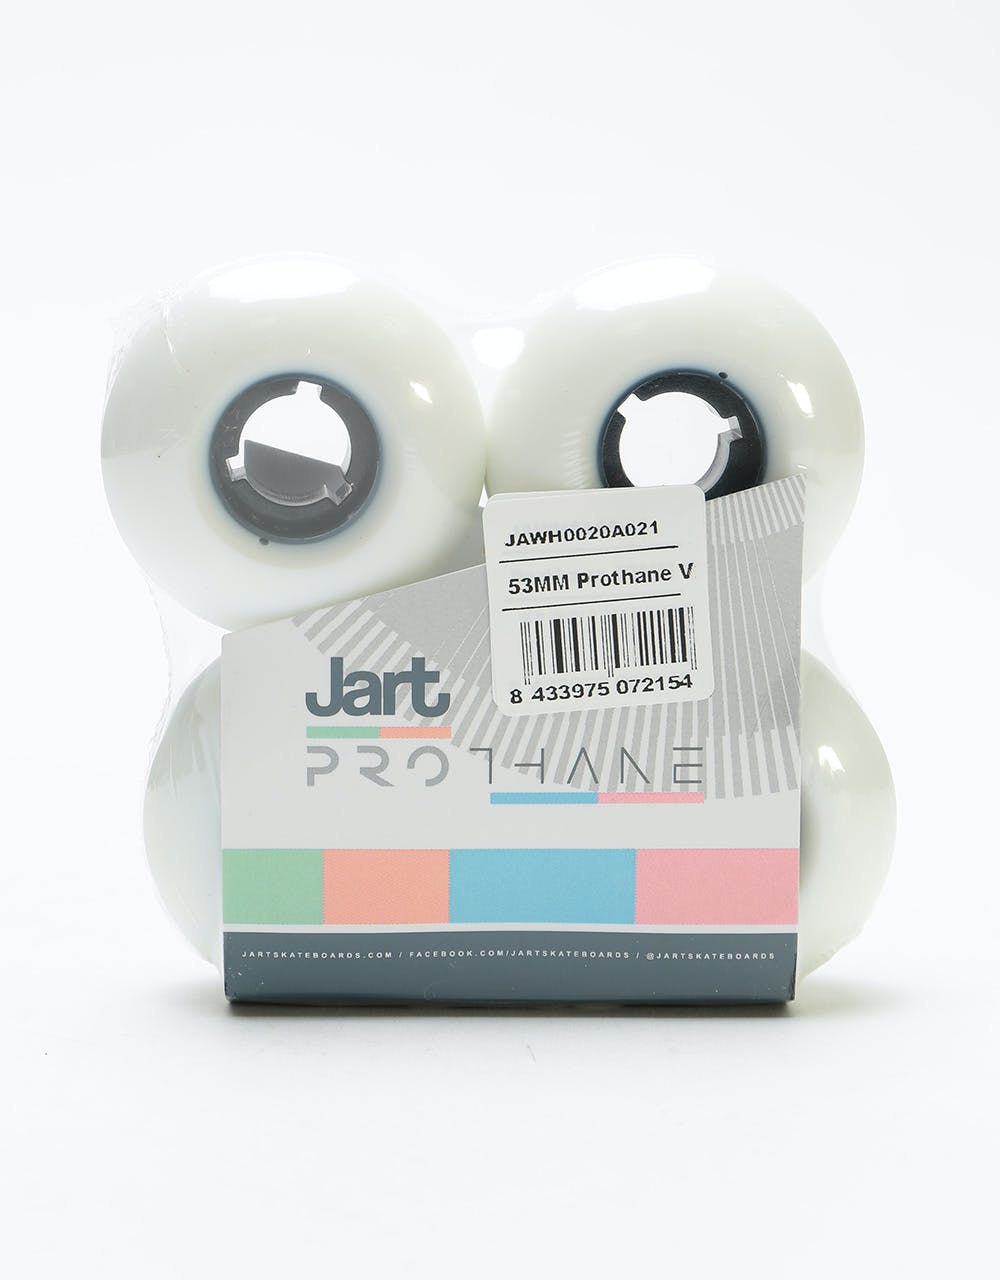 Jart Prothane V2 83b Skateboard Wheel - 53mm